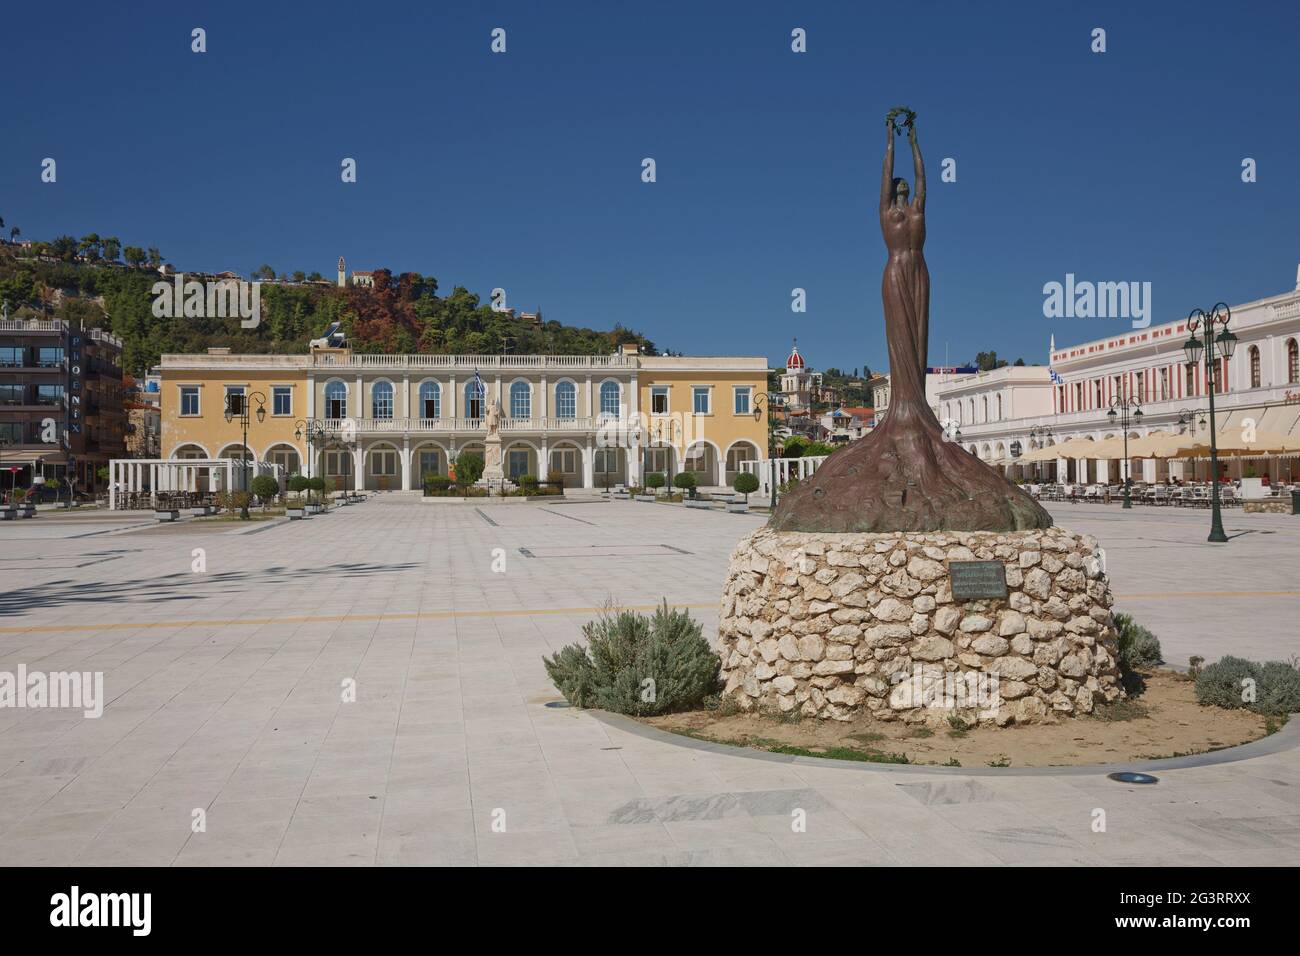 La piazza principale della città di Zante, in Grecia, durante la bella giornata estiva Foto Stock